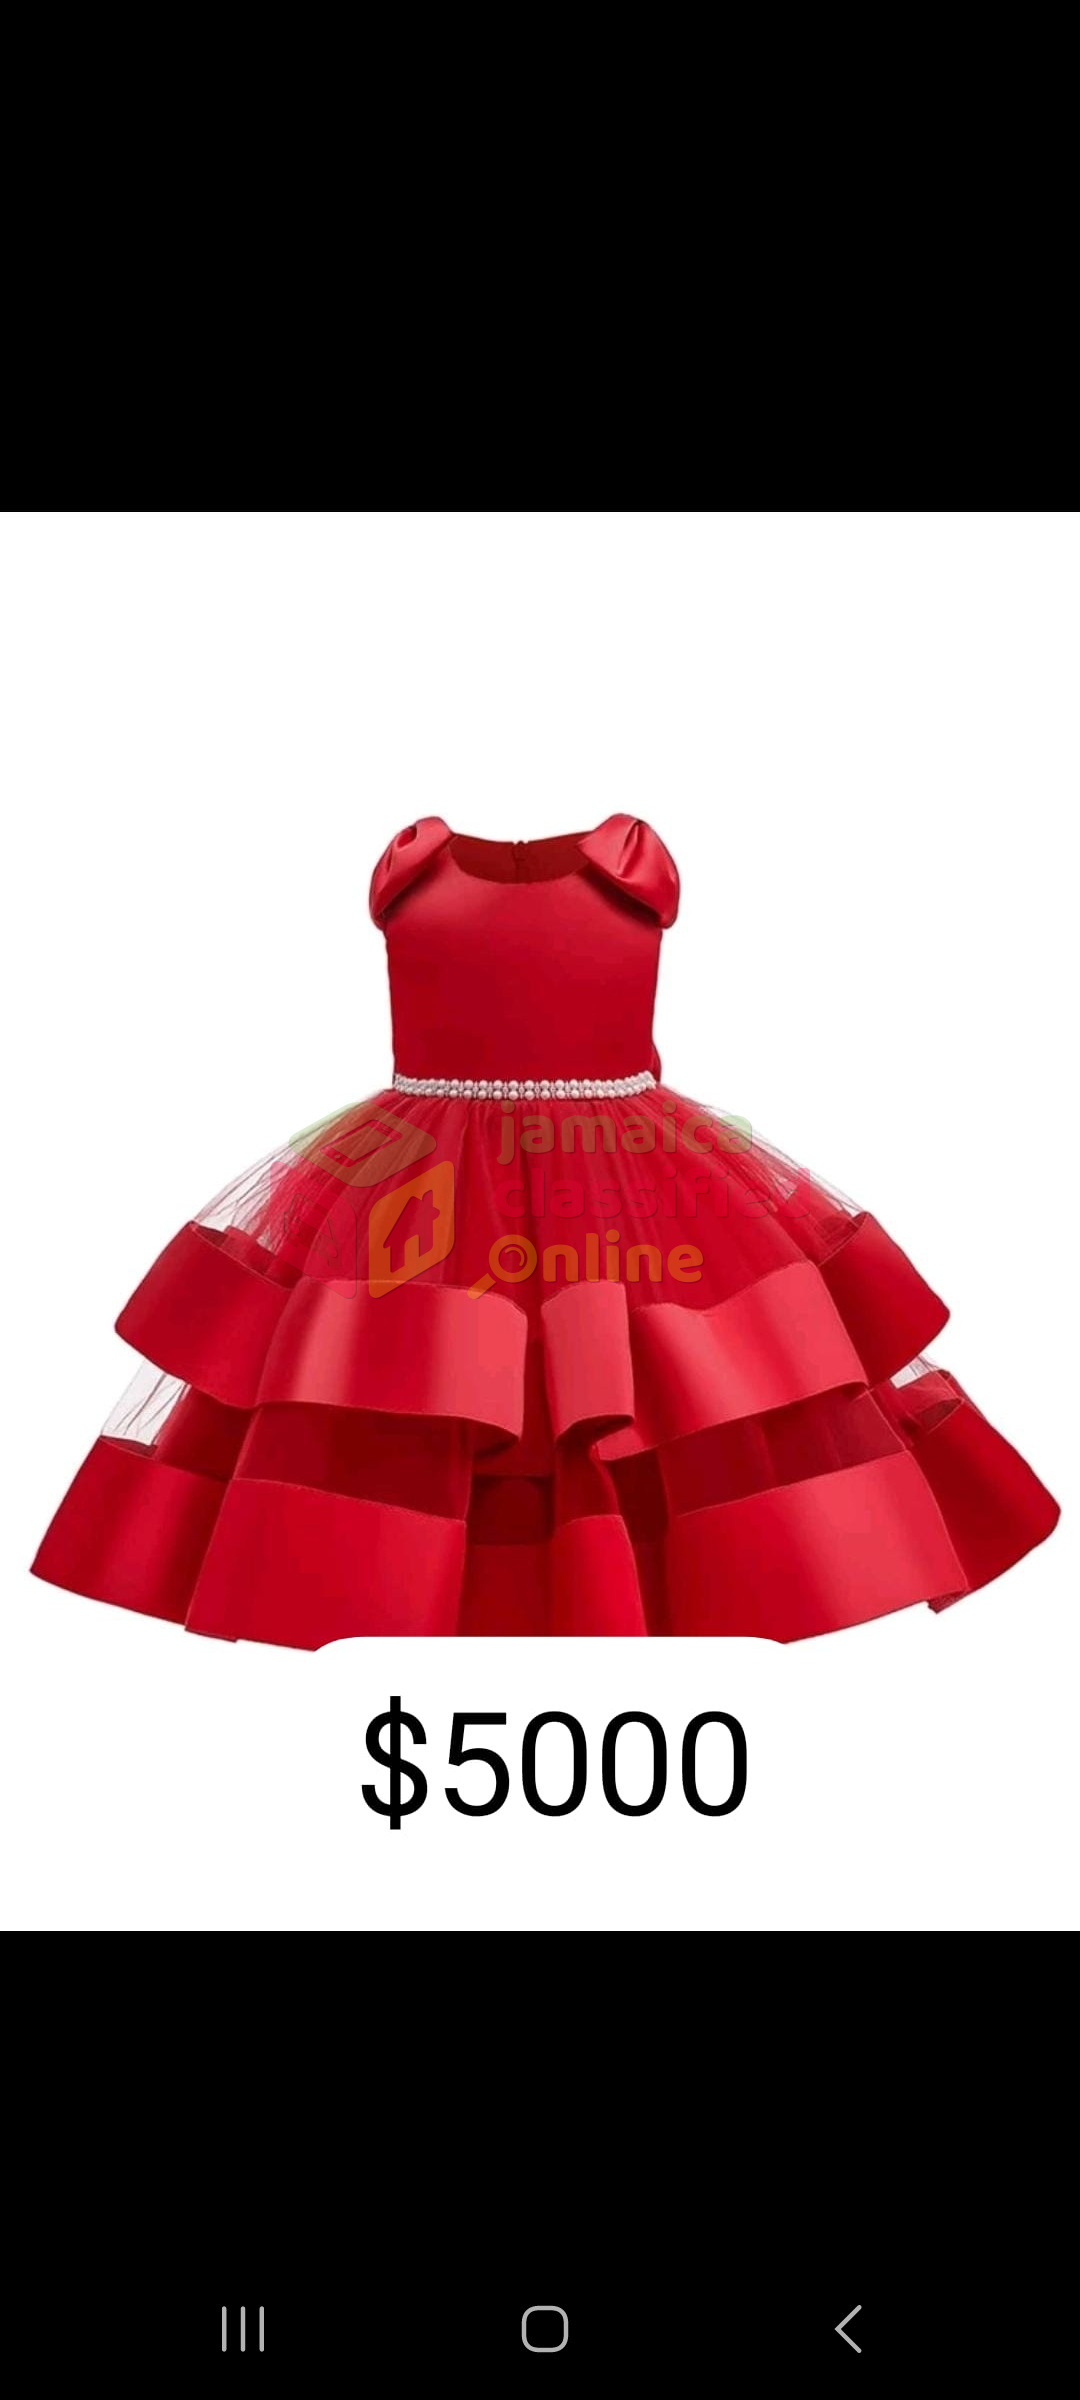 For Sale: Little Girls Christmas Dress - Portmore /kingston